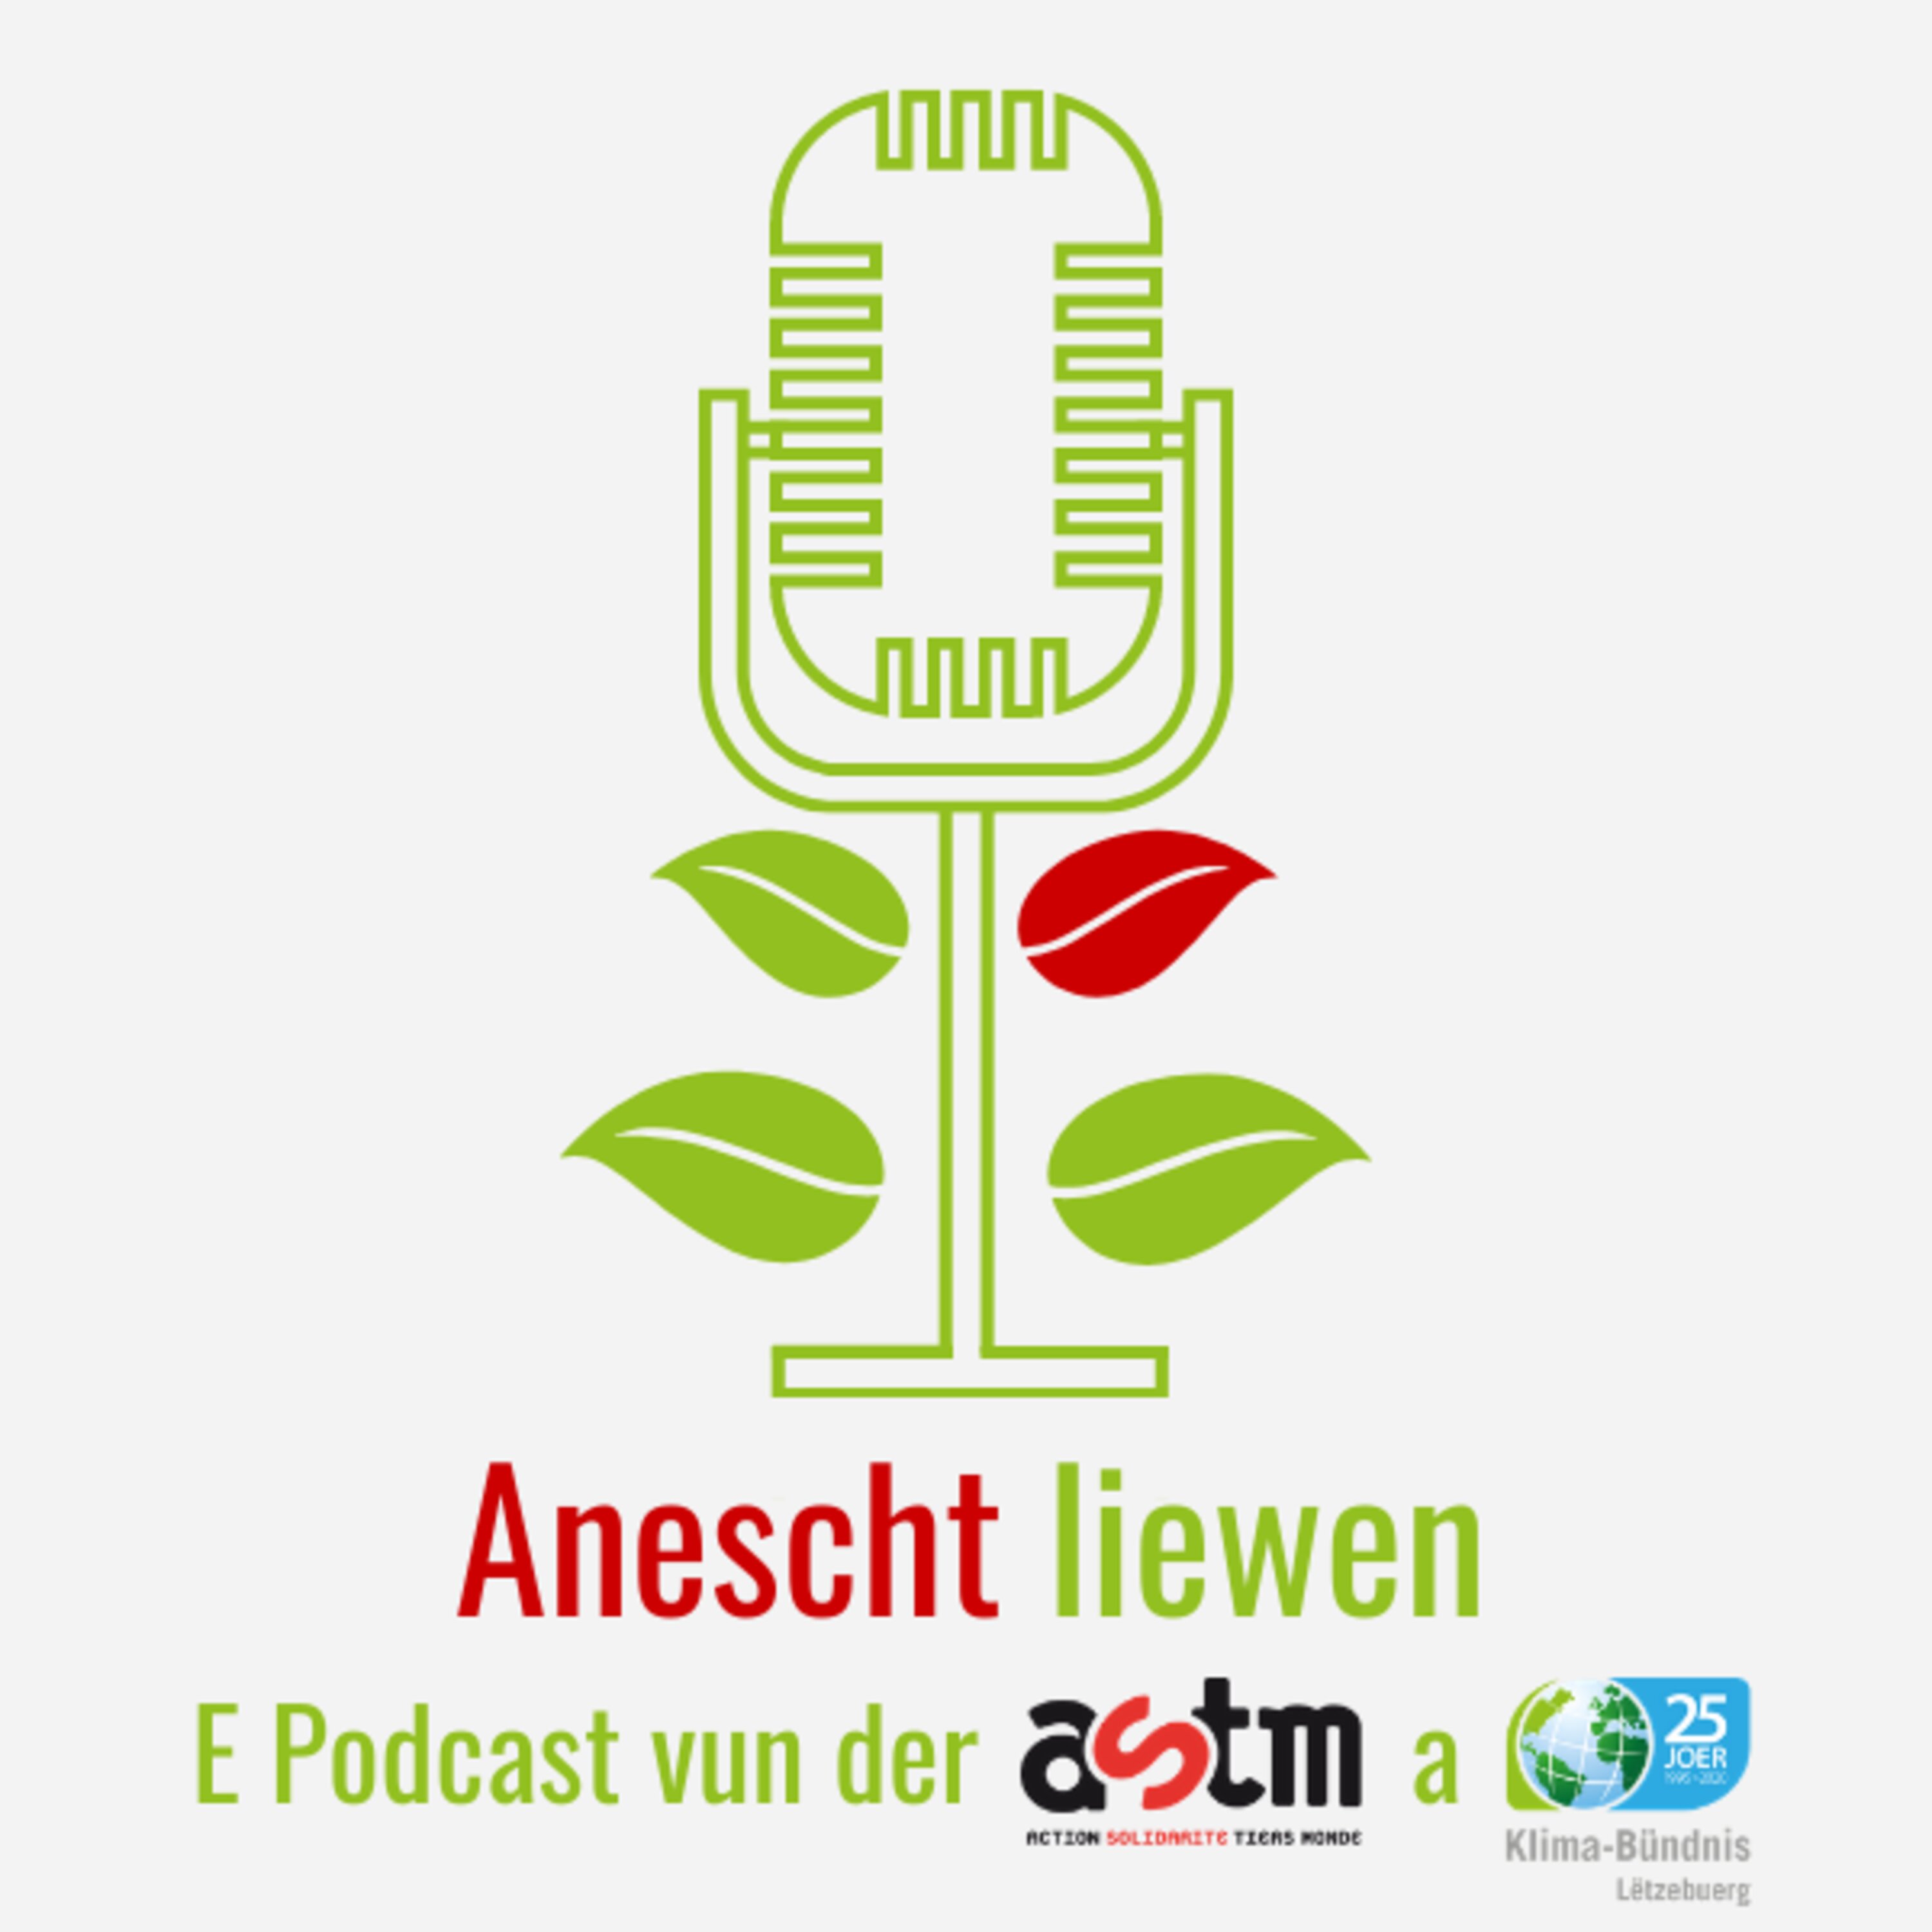 Trailer zu Anescht Liewen - Dem Podcast vun ASTM mam Cédric Reichel